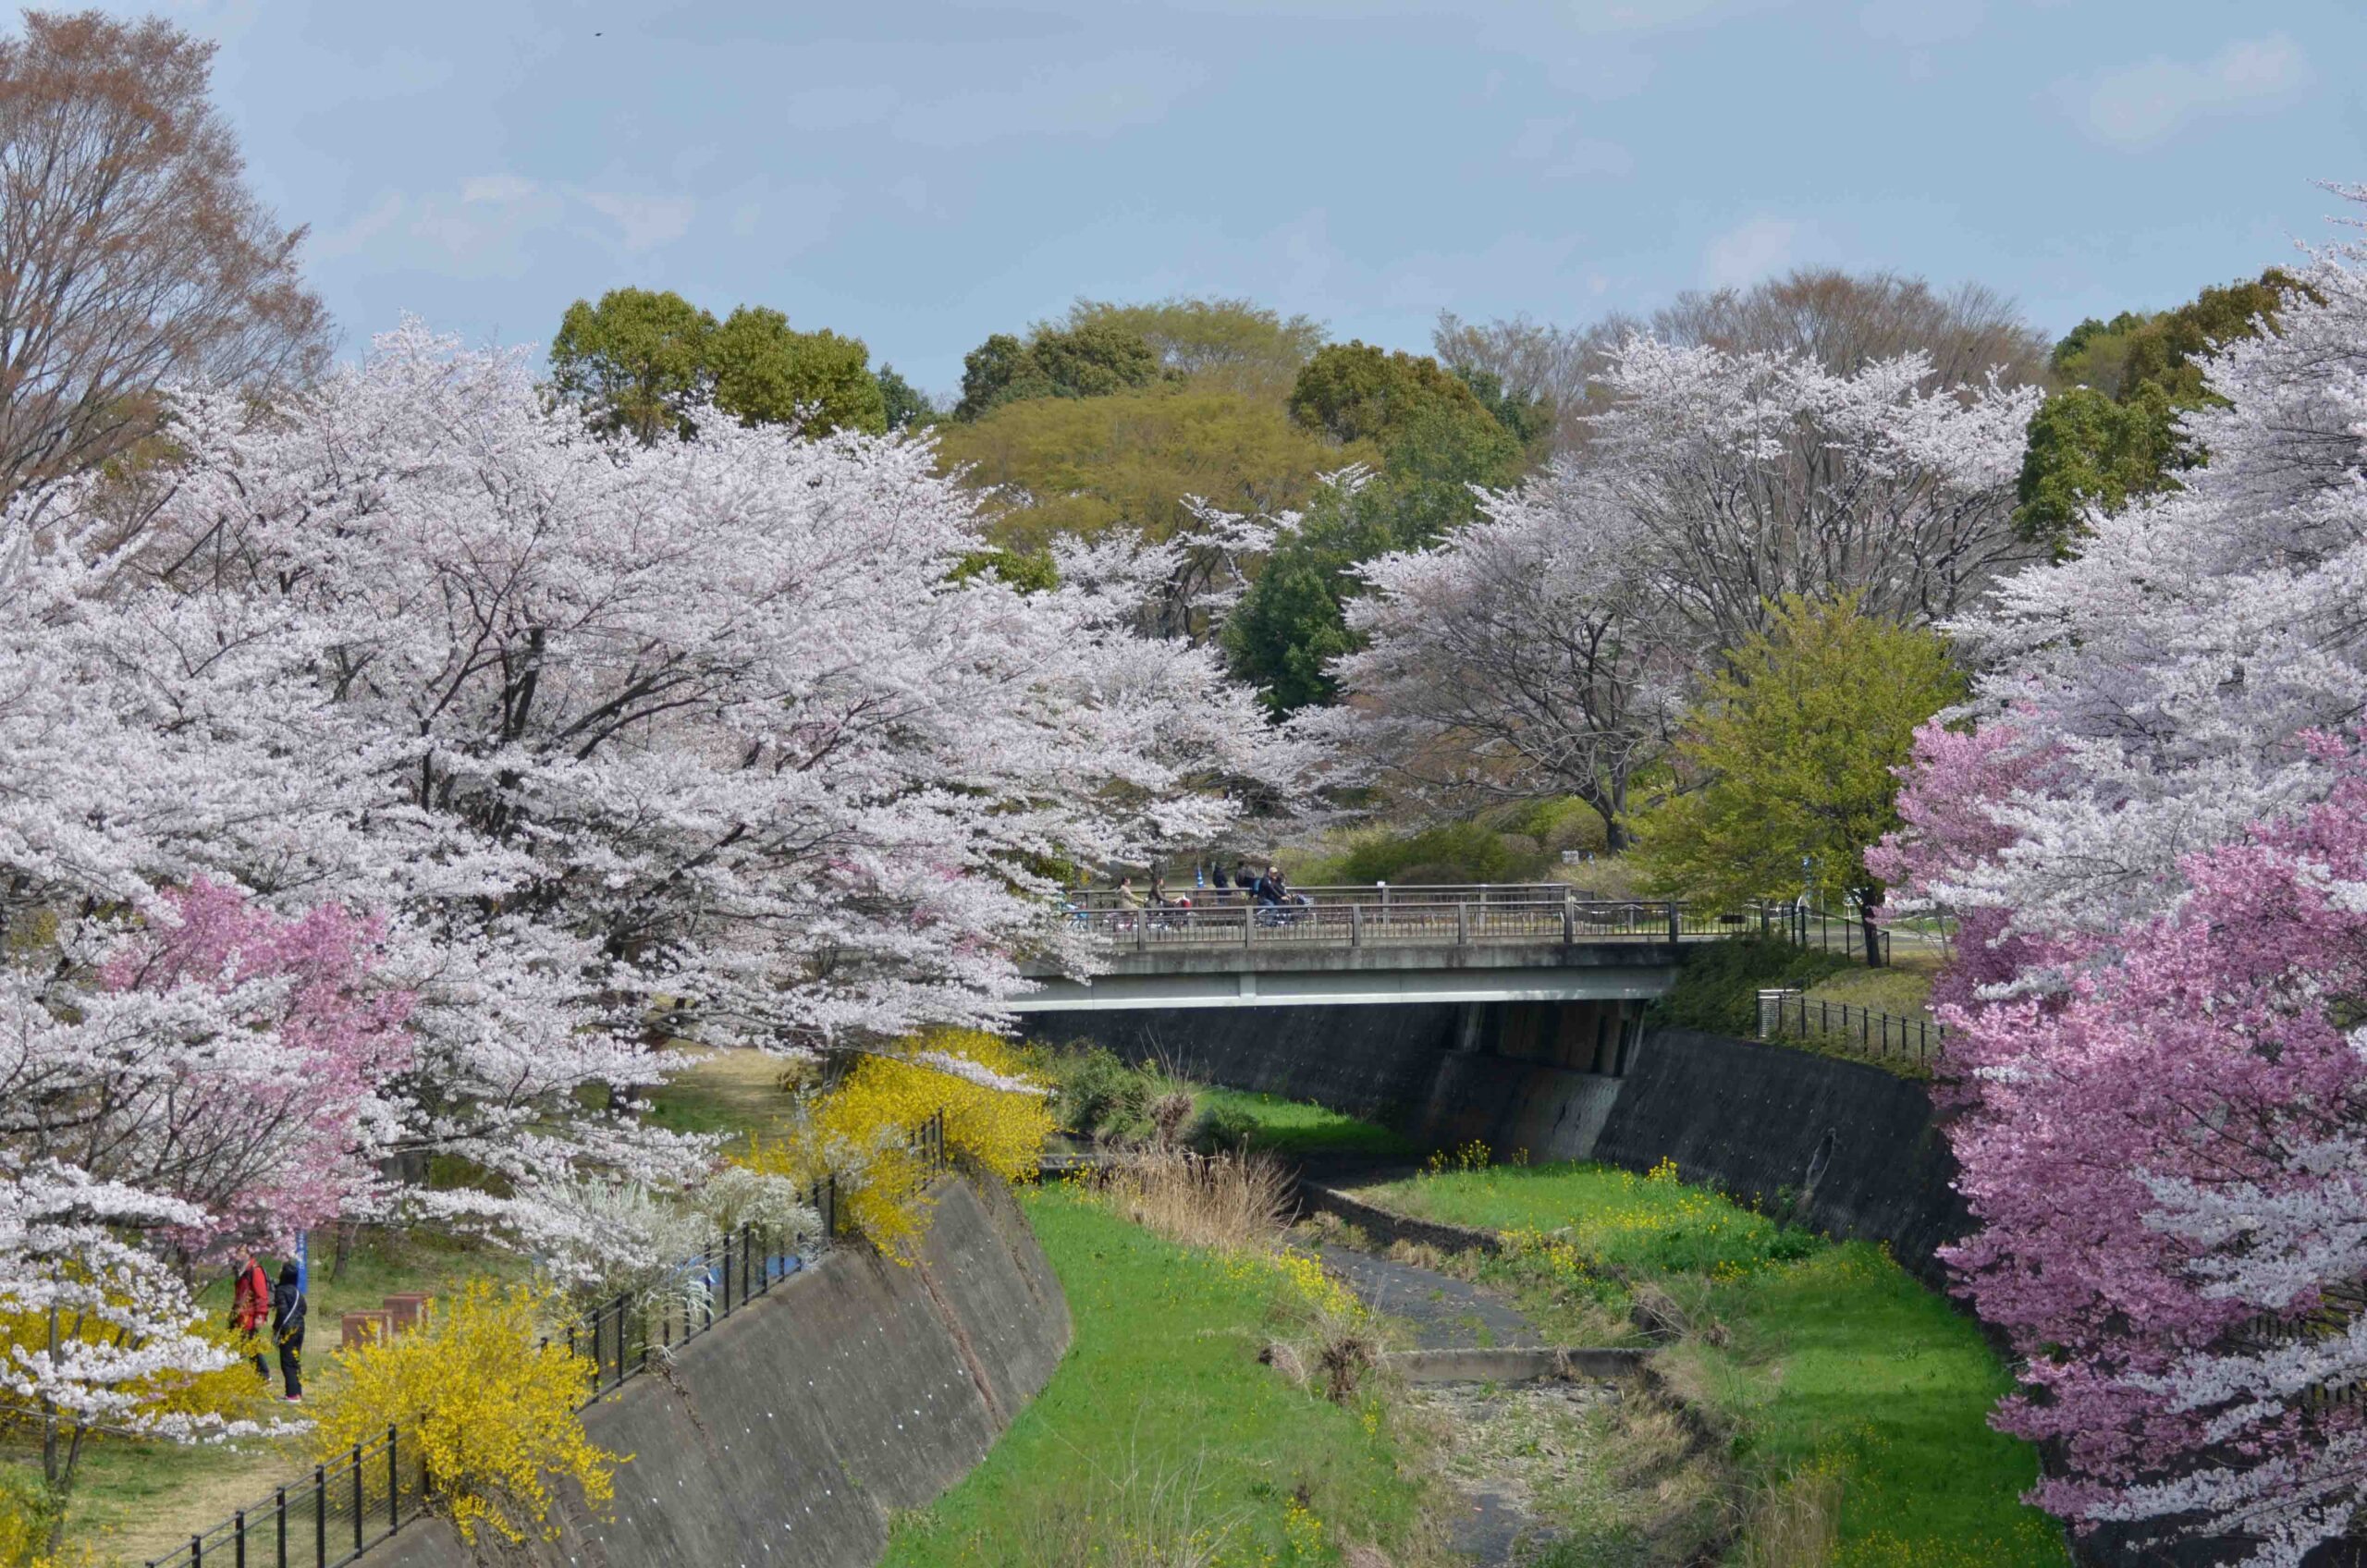 【スナップ撮影】桜が咲く頃、昭和記念公園に出掛けてみよう